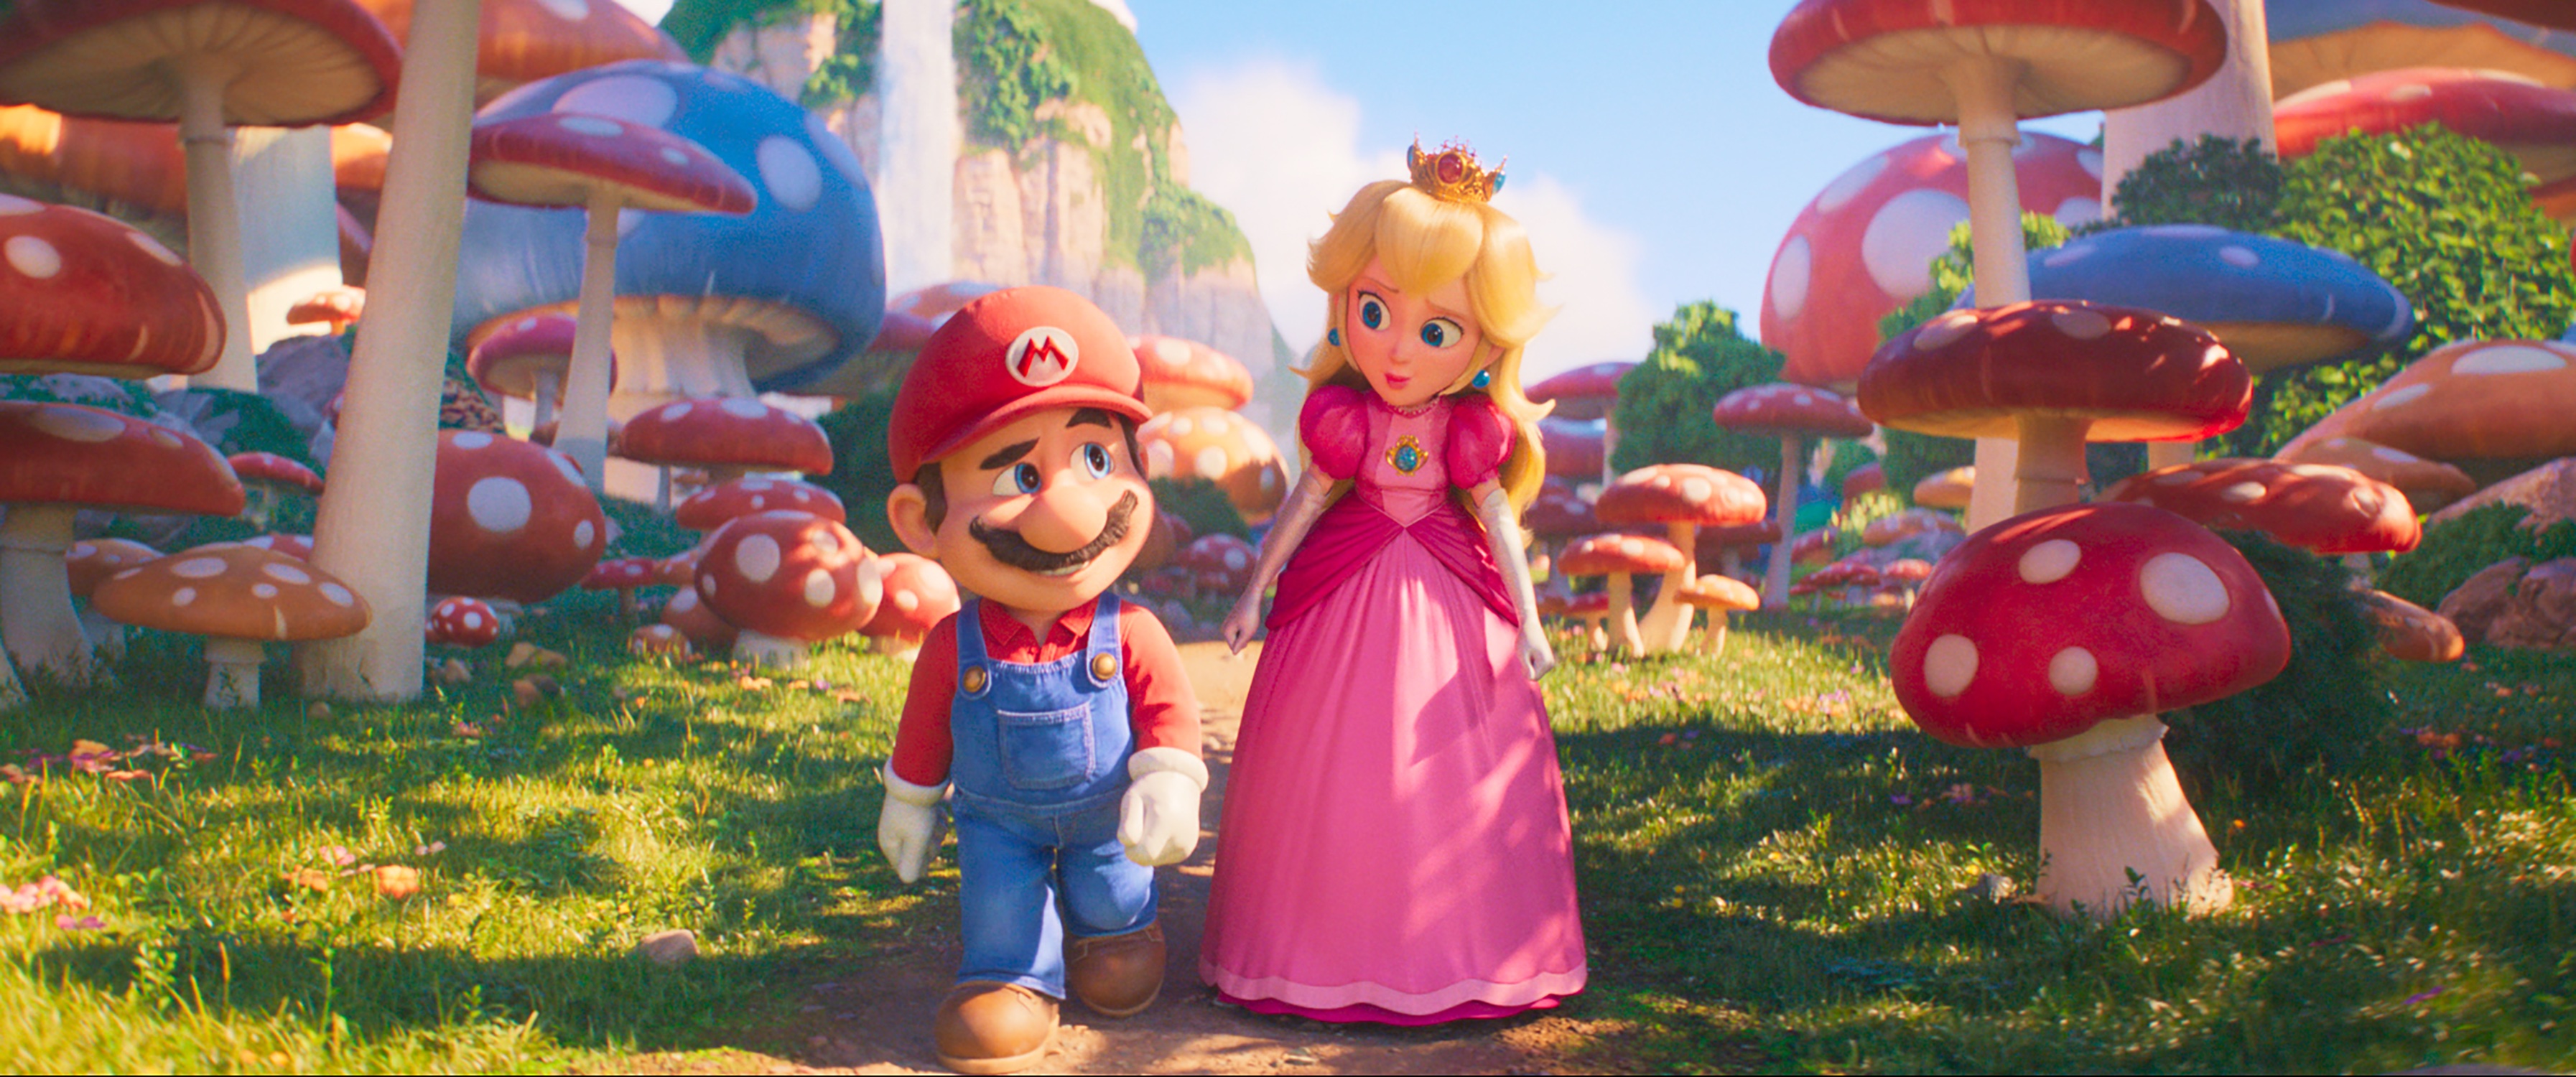 Mario and Princess Peach_ (1).jpg